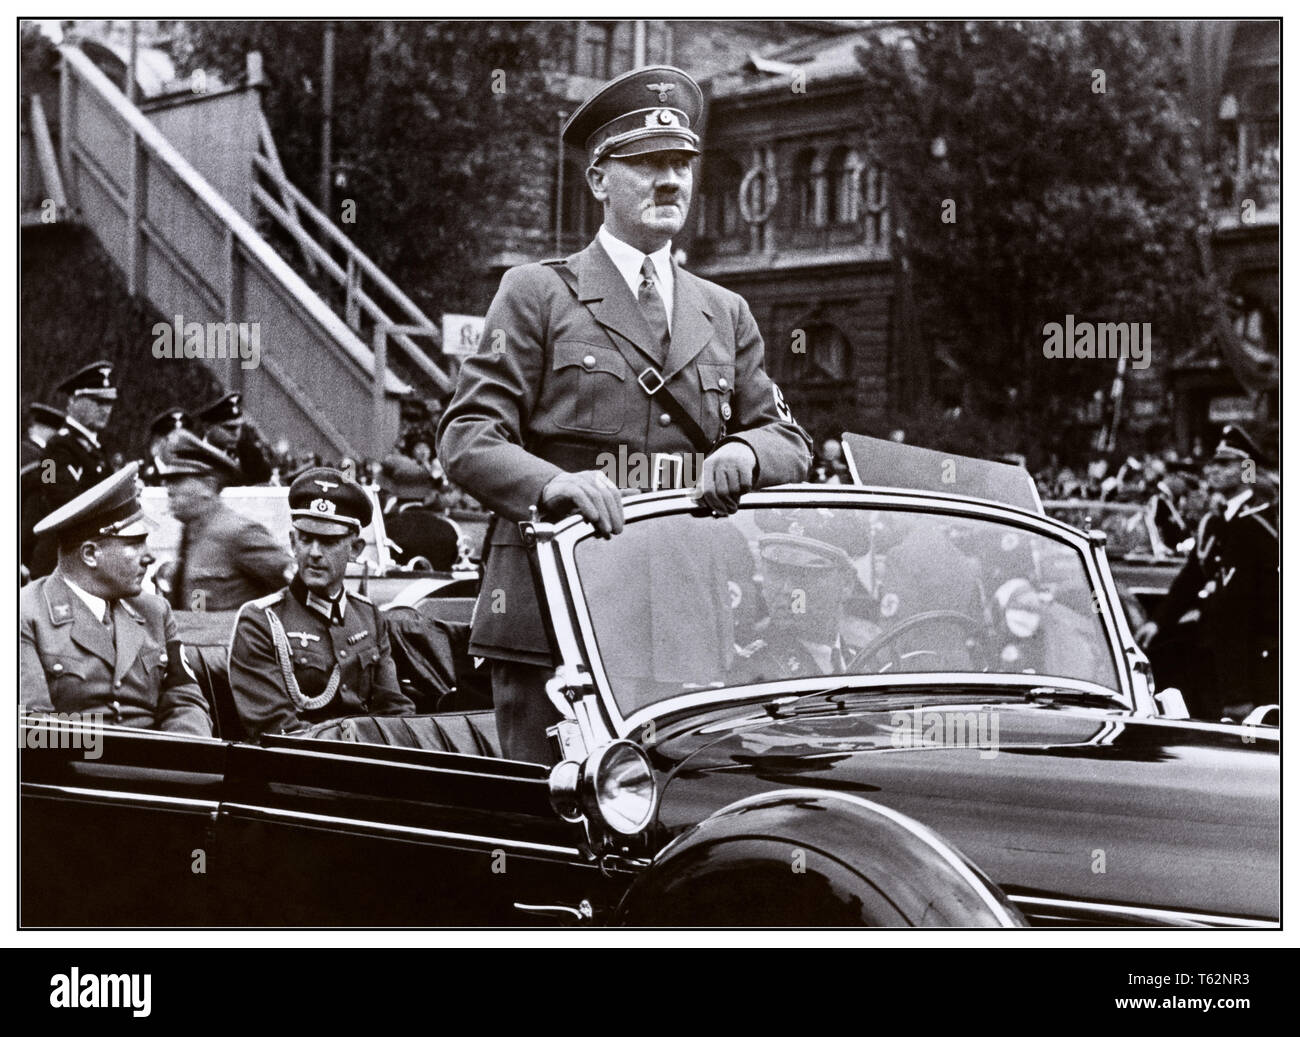 Archiv 1930 Adolf Hitler in einem oben offenen Mercedes-Benz 770 K Brutto Open Tourer motorcar während einer Parade in Nurembeg Deutschland 5 September 1938 Stockfoto